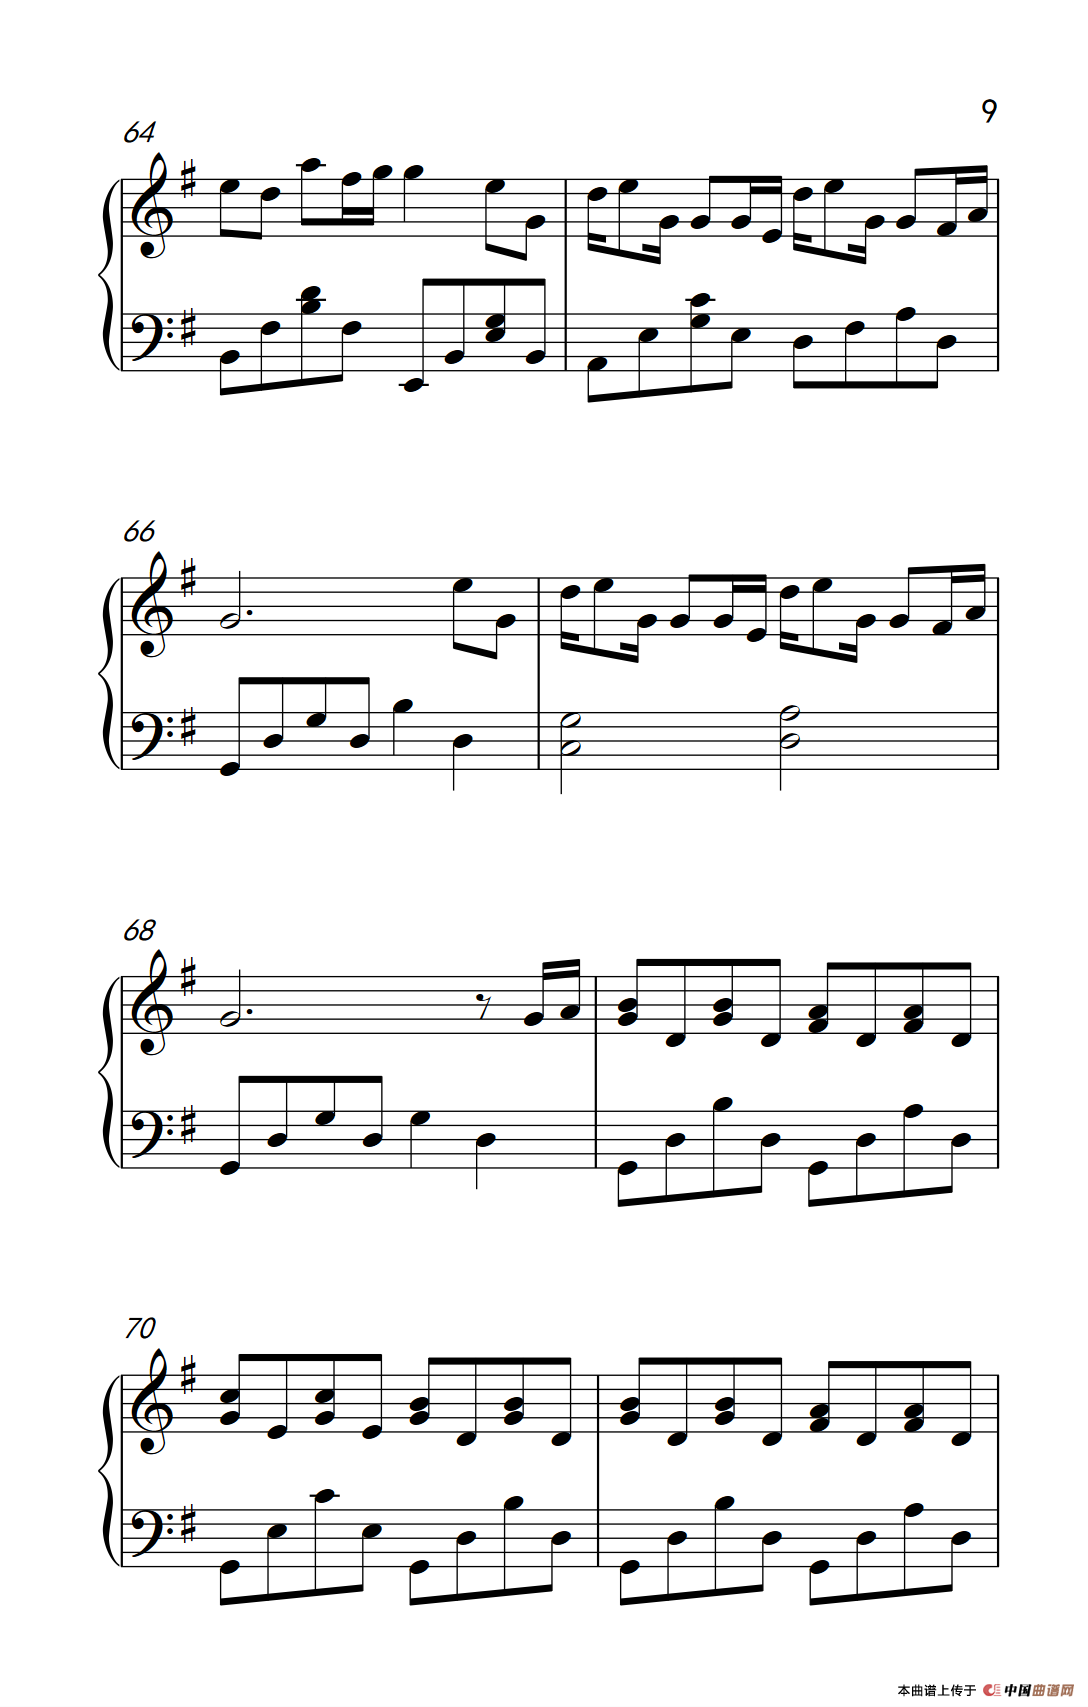 《幸福不是情歌》钢琴曲谱图分享